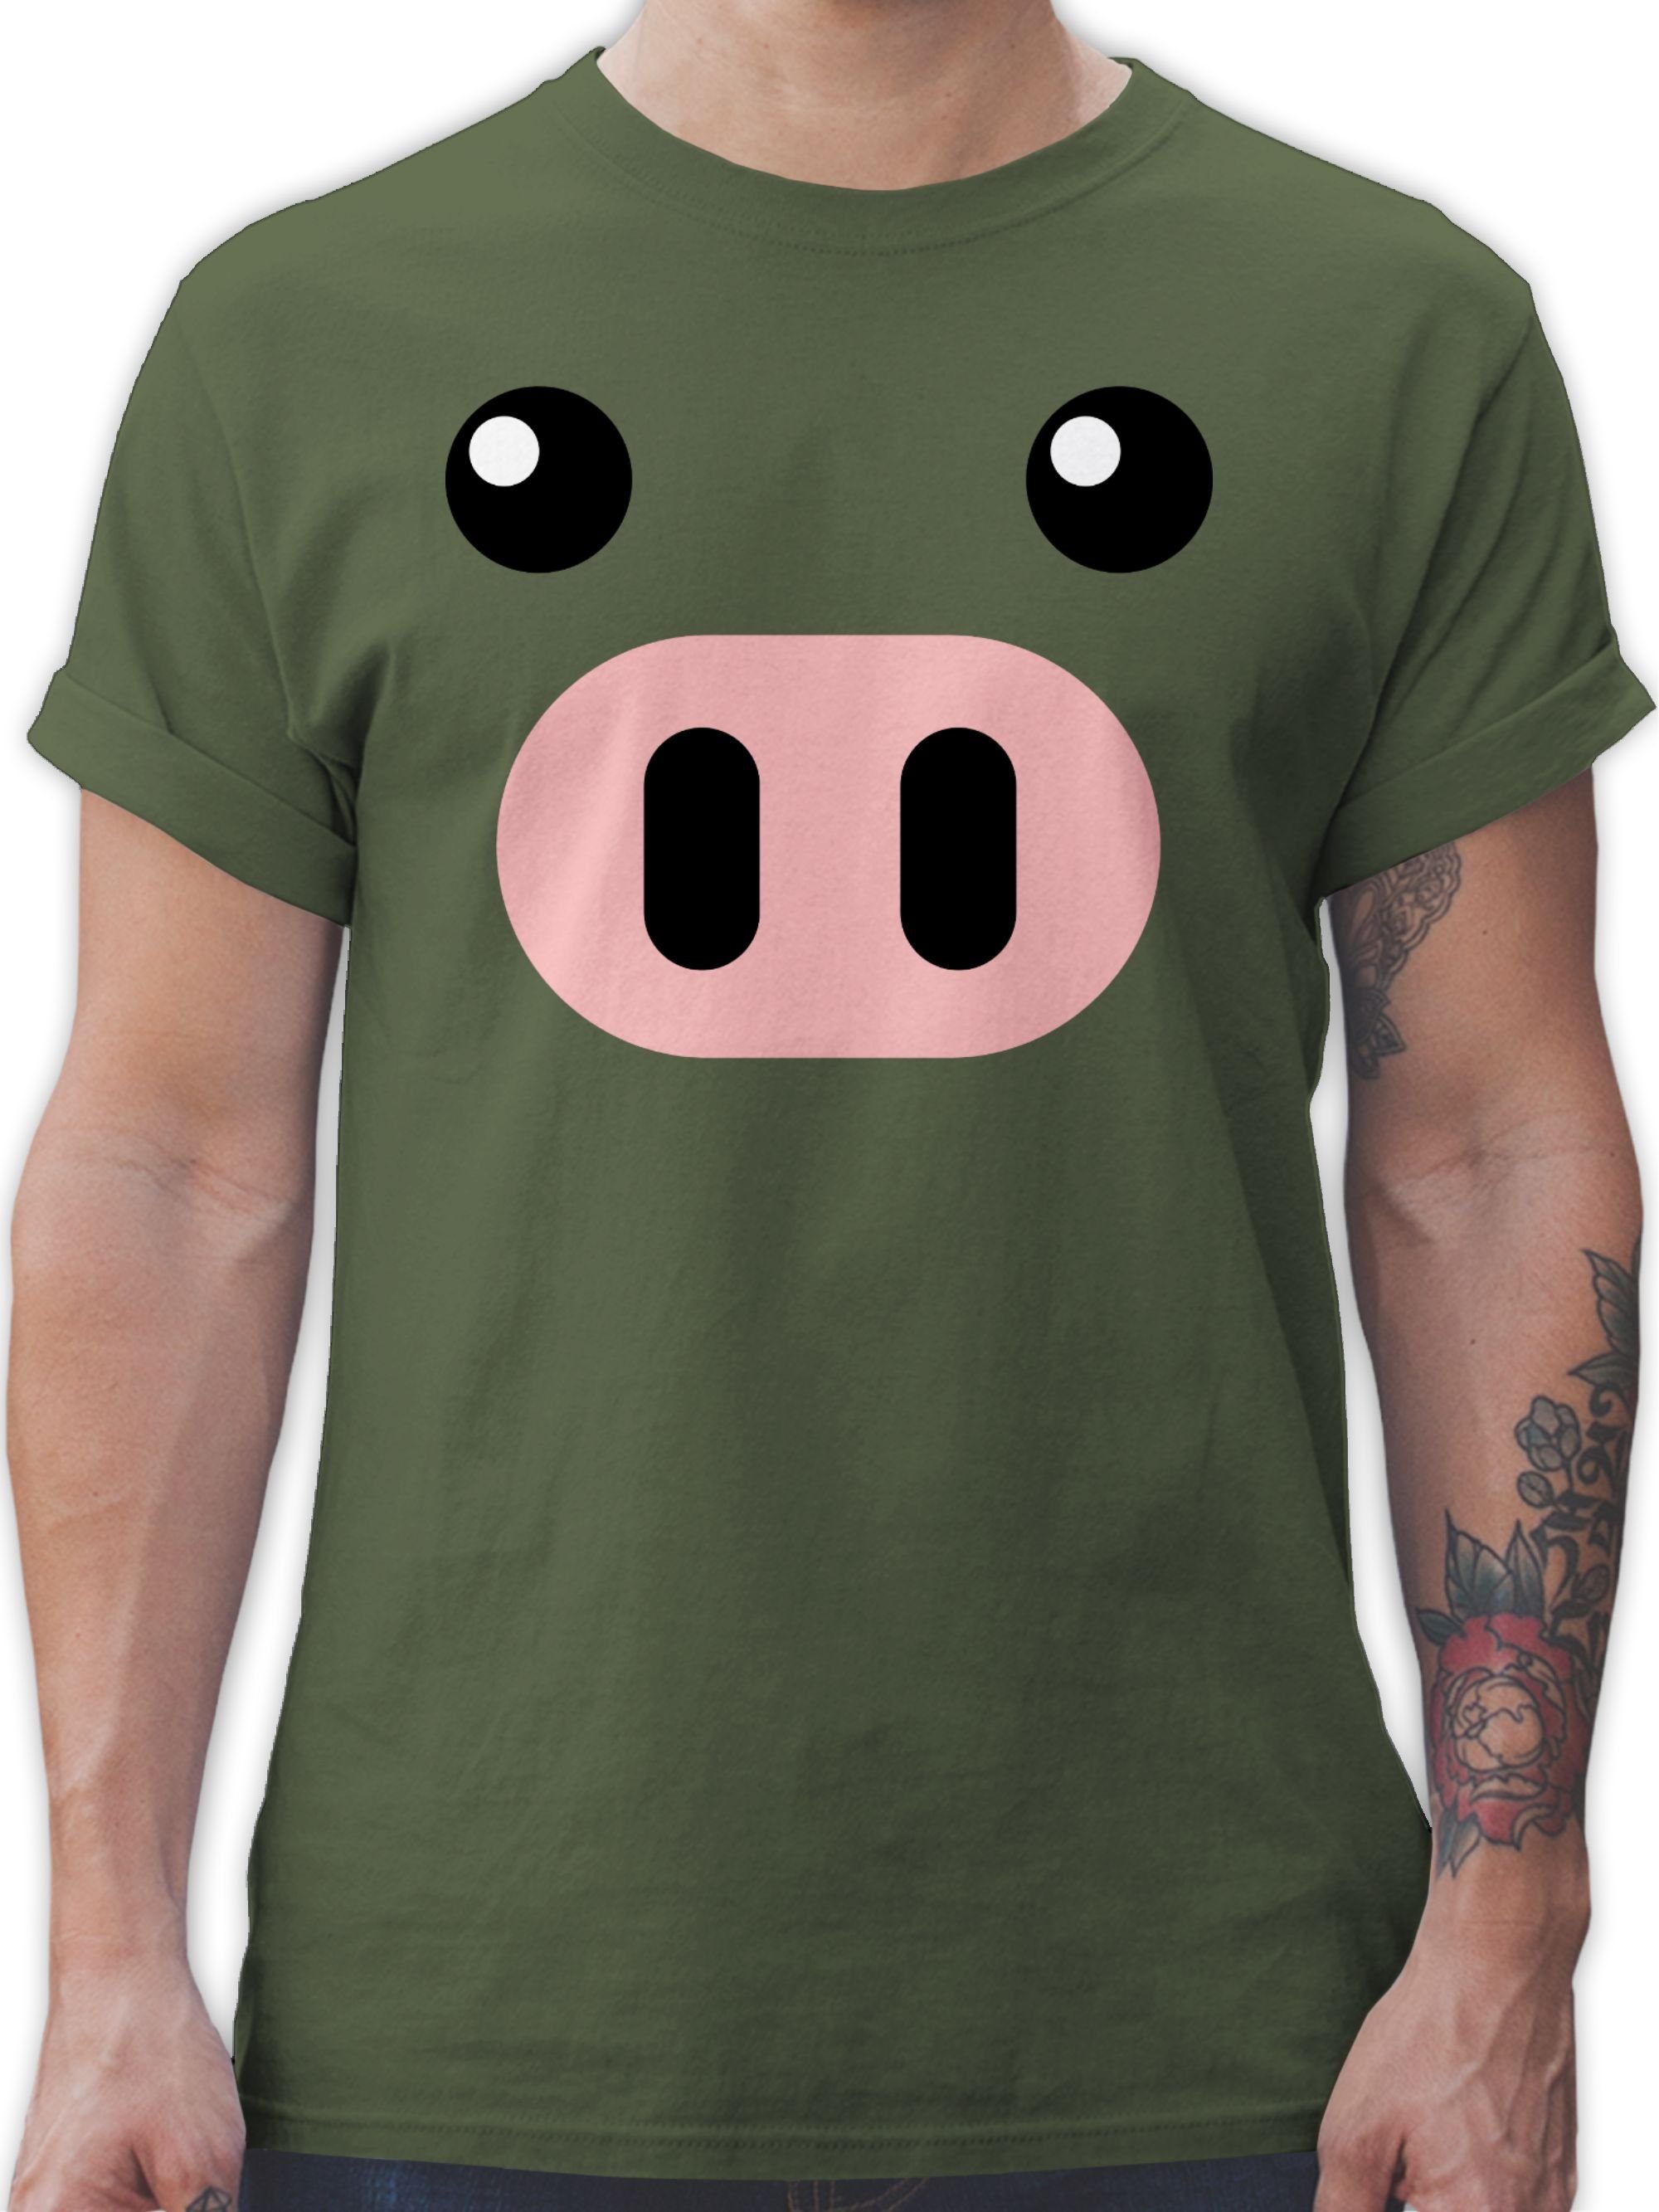 Shirtracer T-Shirt Schwein Kostüm - Schweinchen Schweine Sau Ferkel Pig Schweinebau Karneval Outfit 2 Army Grün